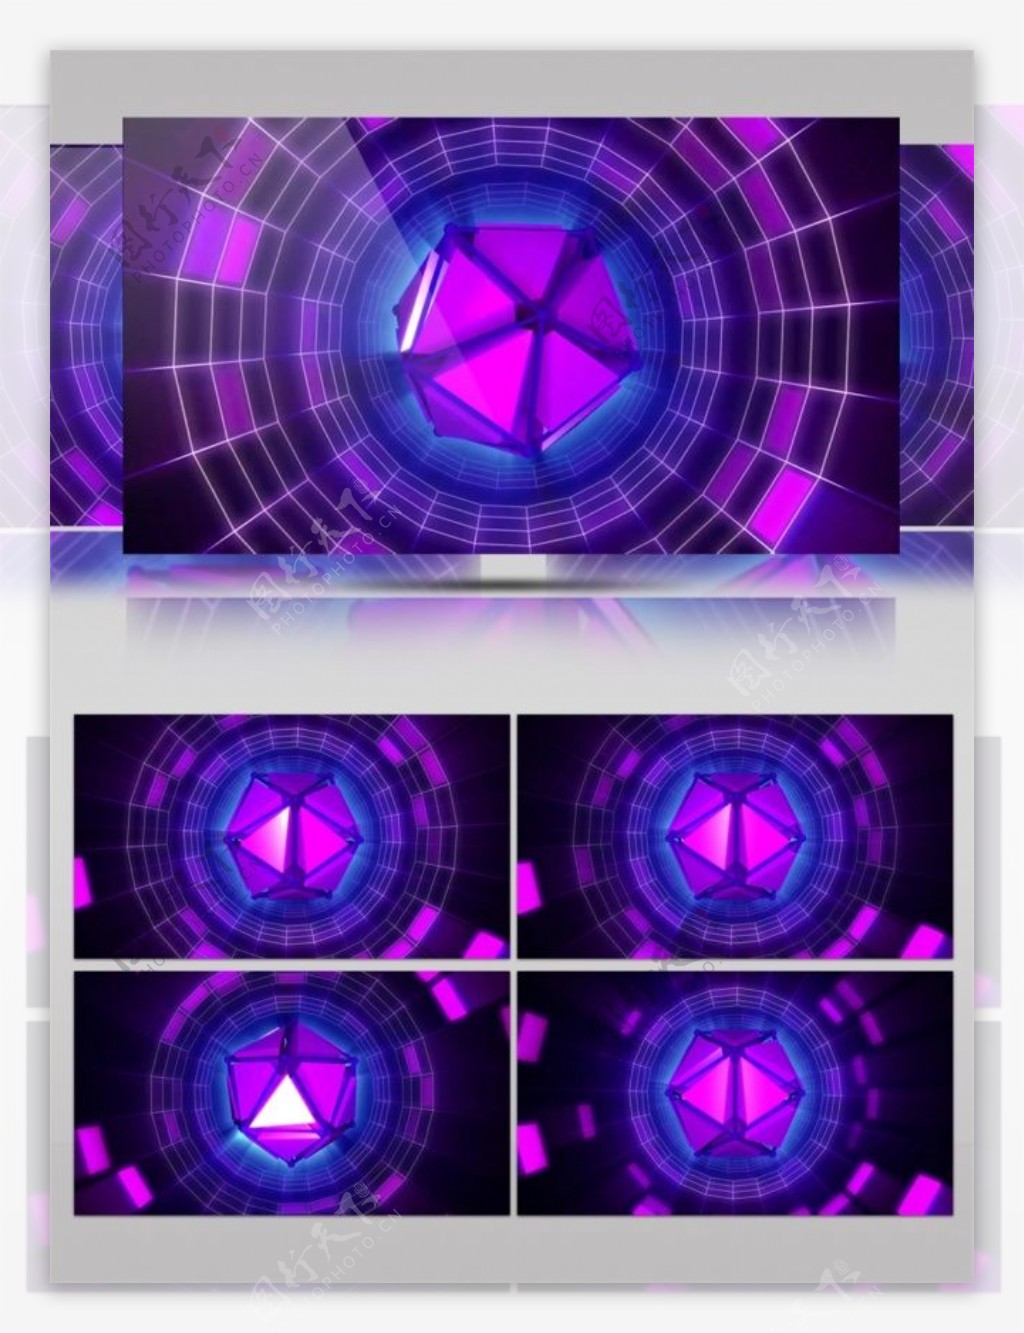 紫色发光水晶动态视频素材